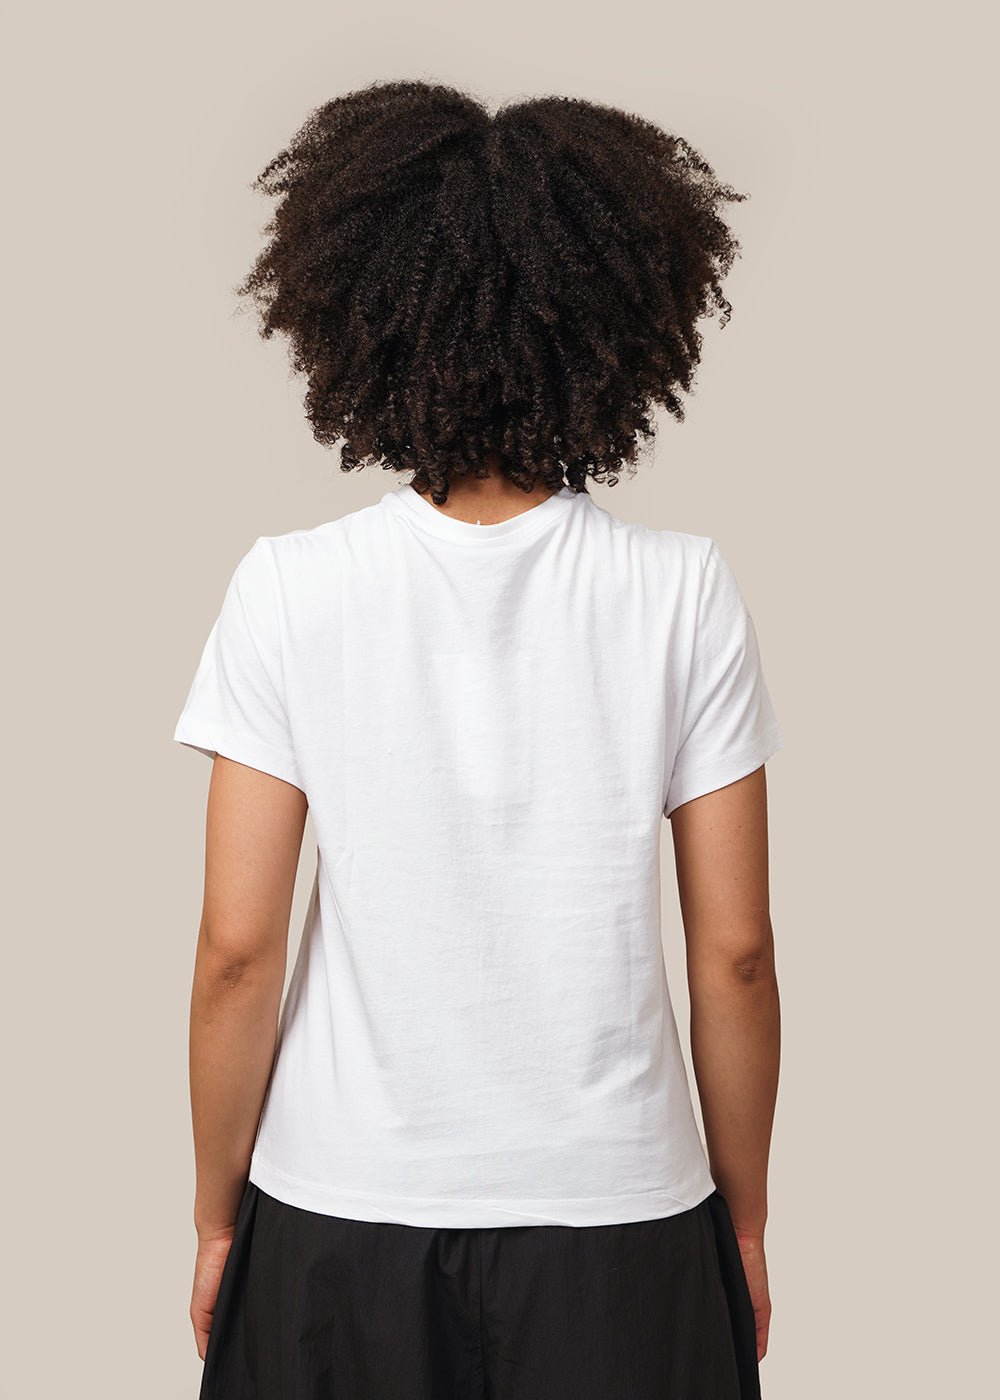 AMOMENTO White Basic T-Shirt - New Classics Studios Sustainable Ethical Fashion Canada